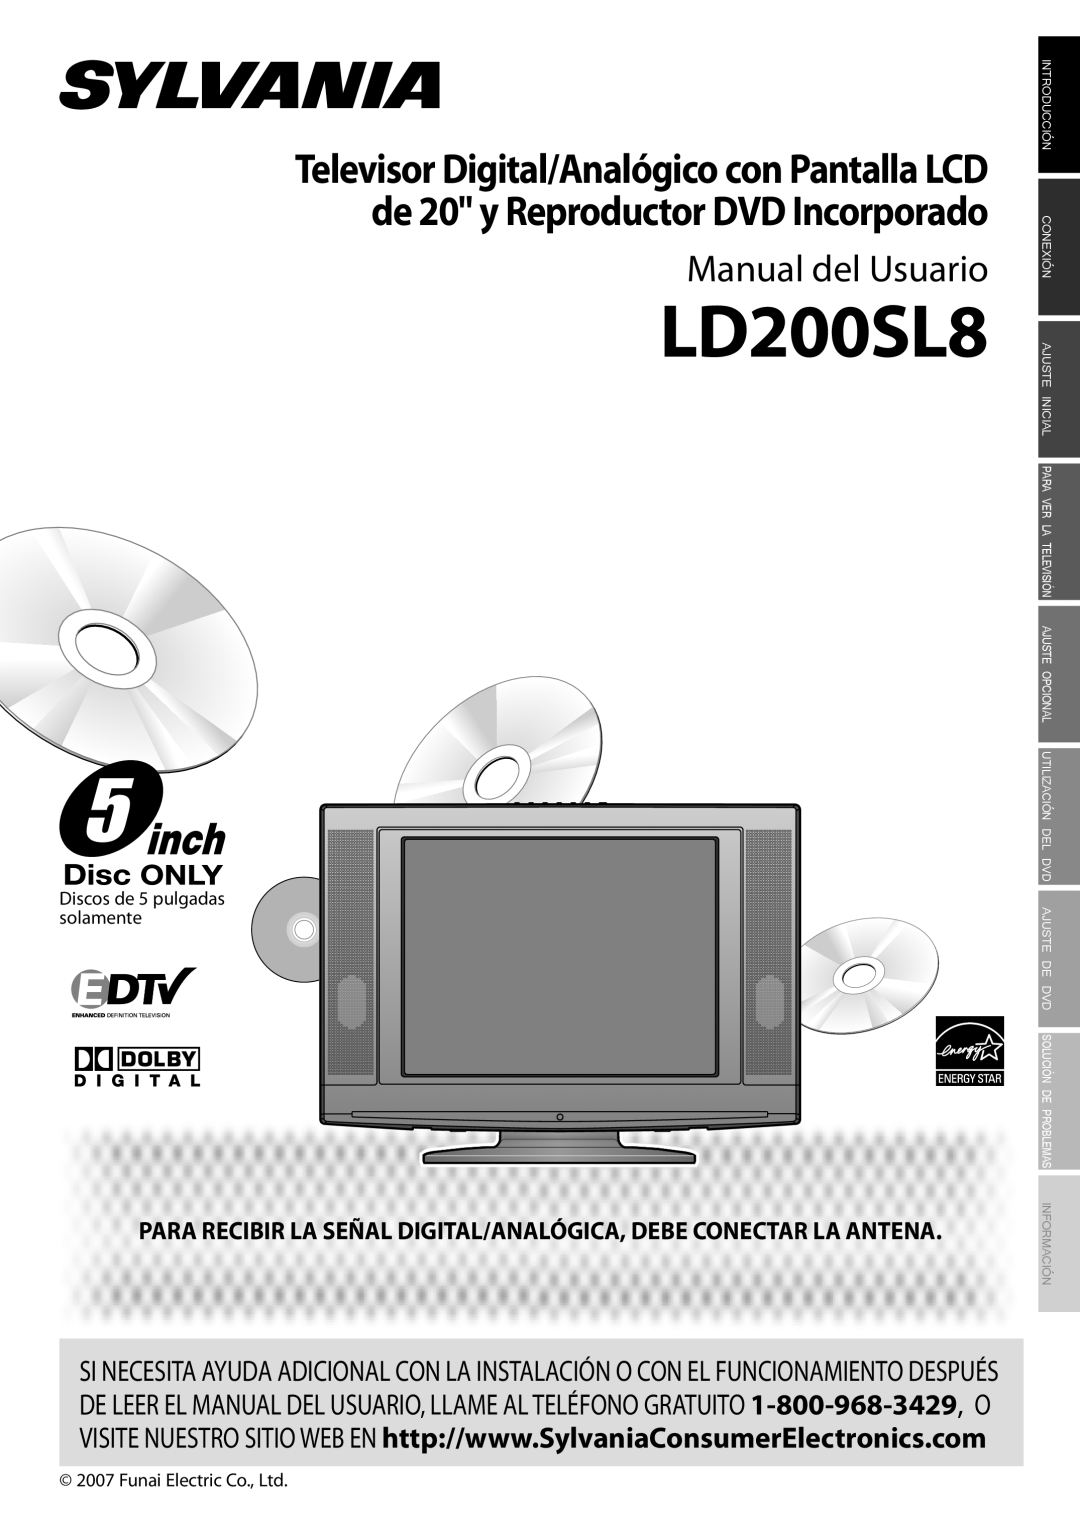 Sylvania LD200SL8 owner manual Manual del Usuario, Para Recibir La Señal Digital/Analógica, Debe Conectar La Antena 